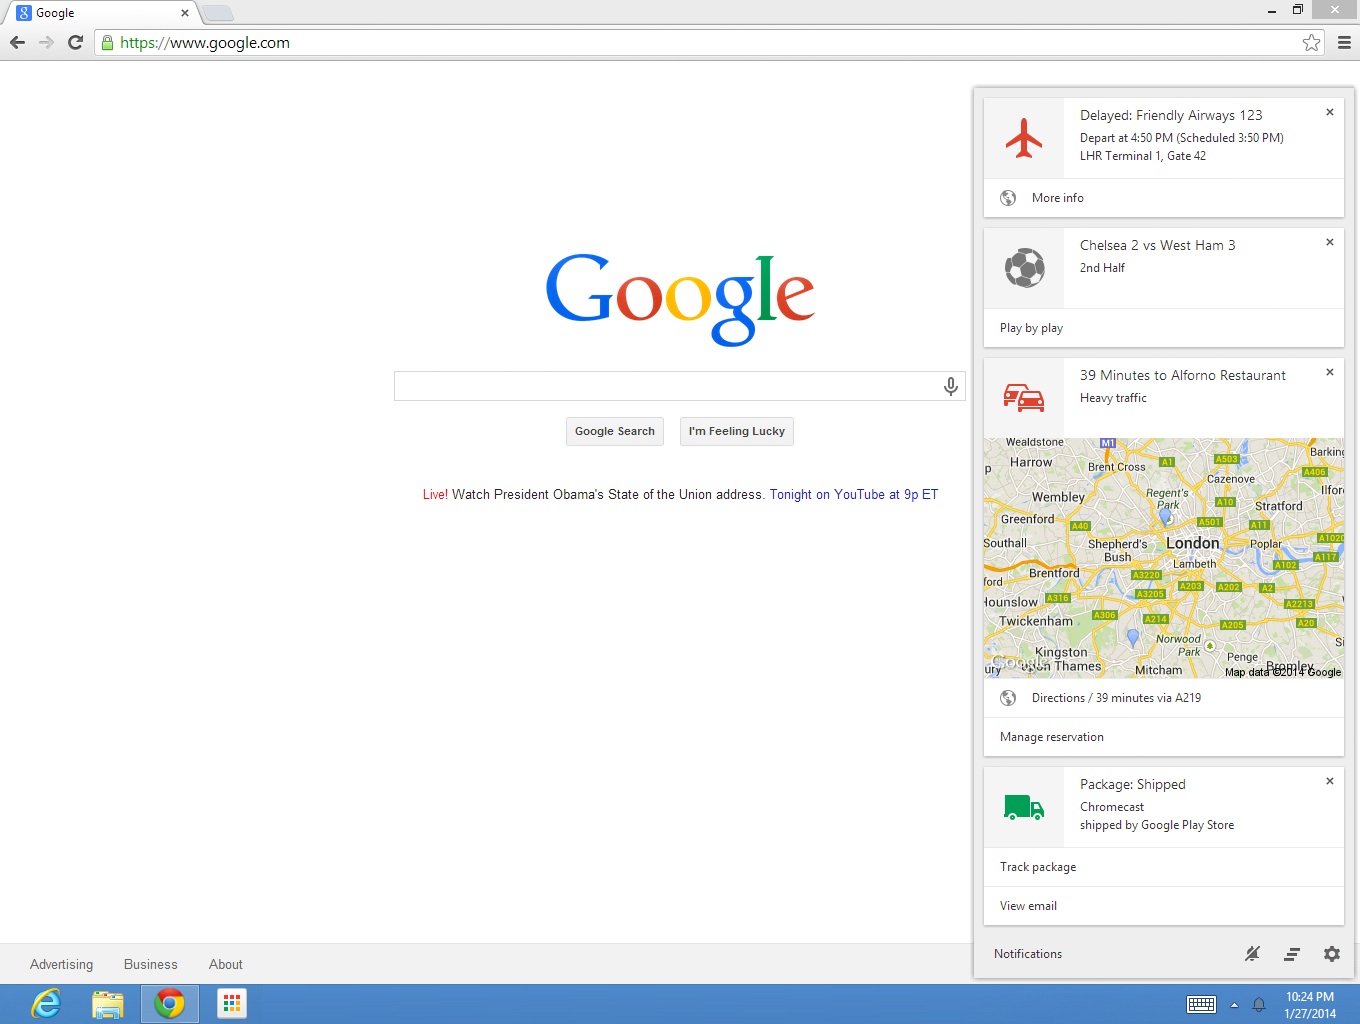 Google Now - Chrome Beta - Windows - Mac OS - Chrome OS